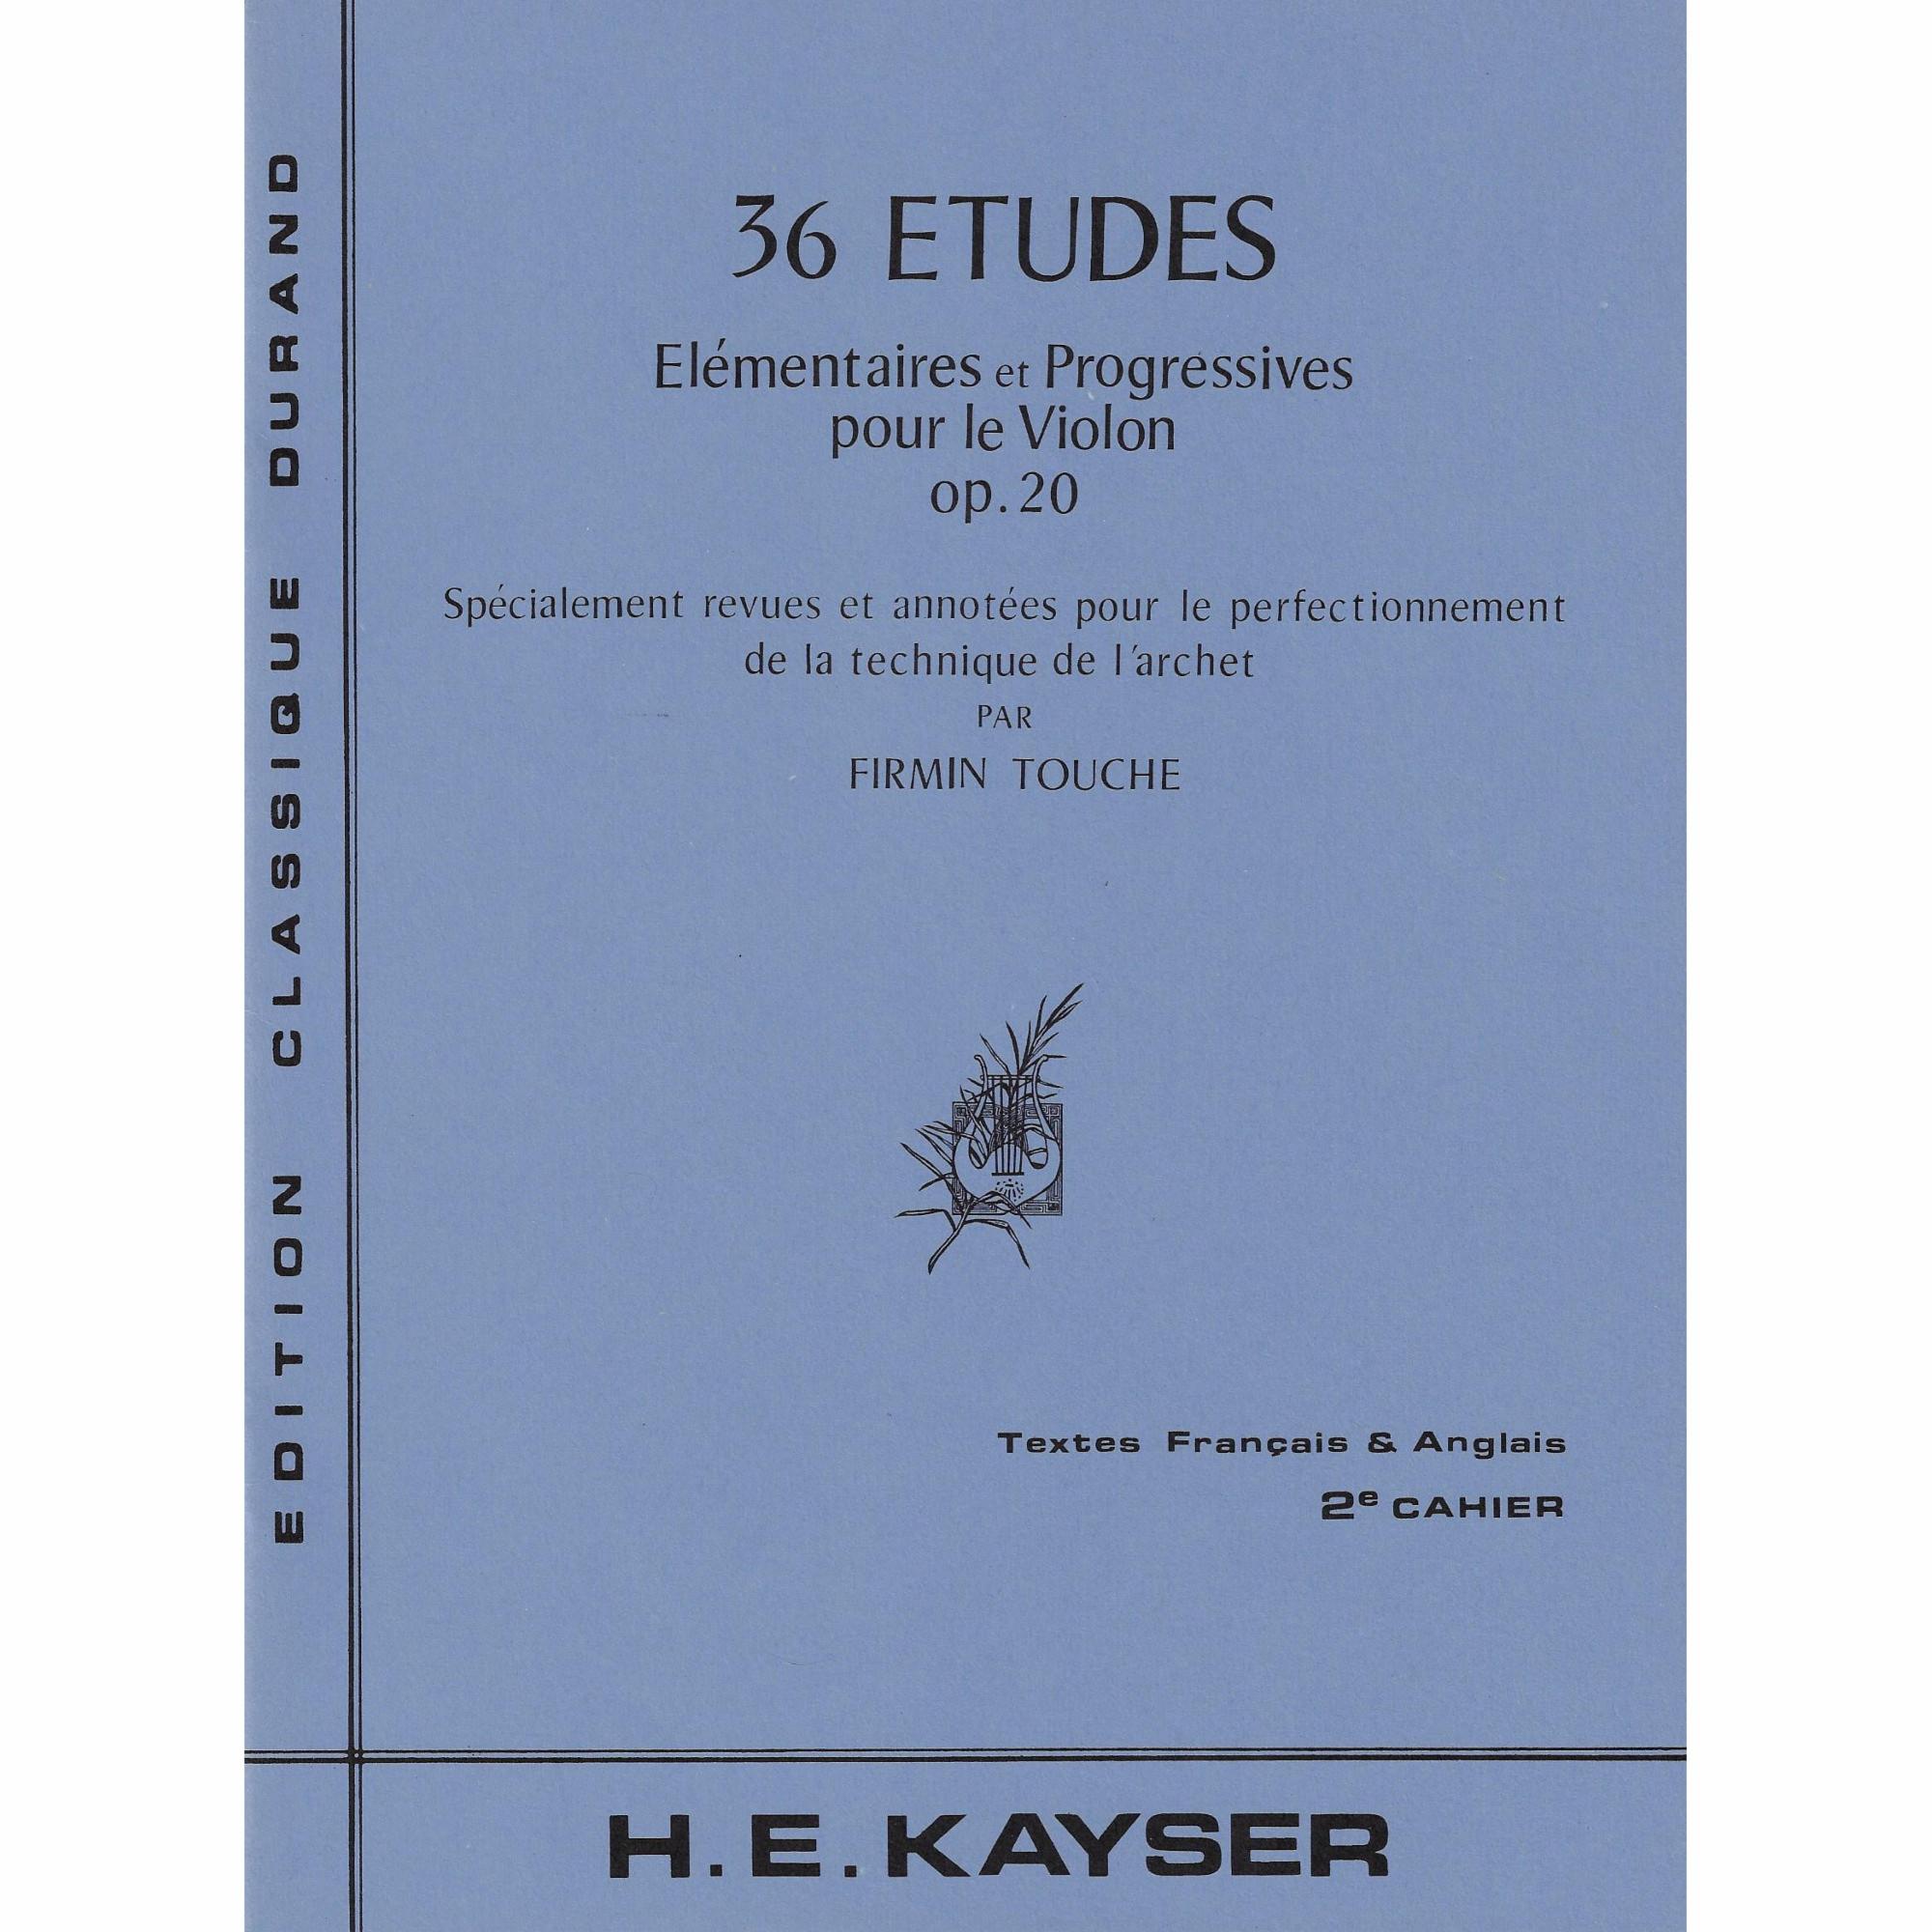 Kayser -- 36 Etudes, Op. 20, Book 1-3 for Violin